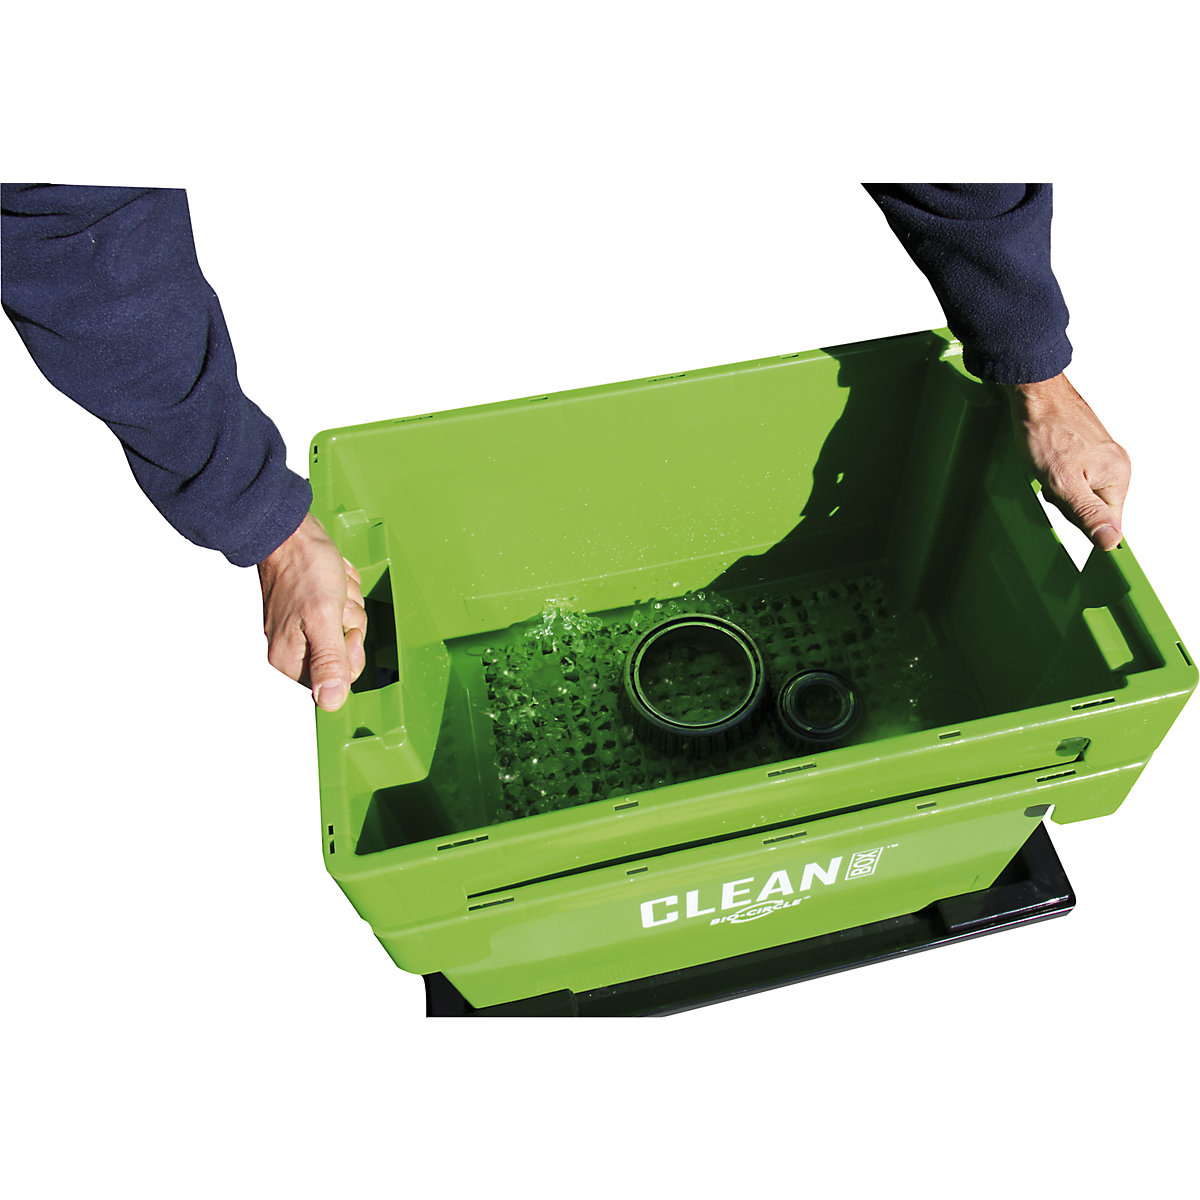 Stanowisko czyszczenia małych części CLEAN BOX – Bio-Circle (Zdjęcie produktu 3)-2